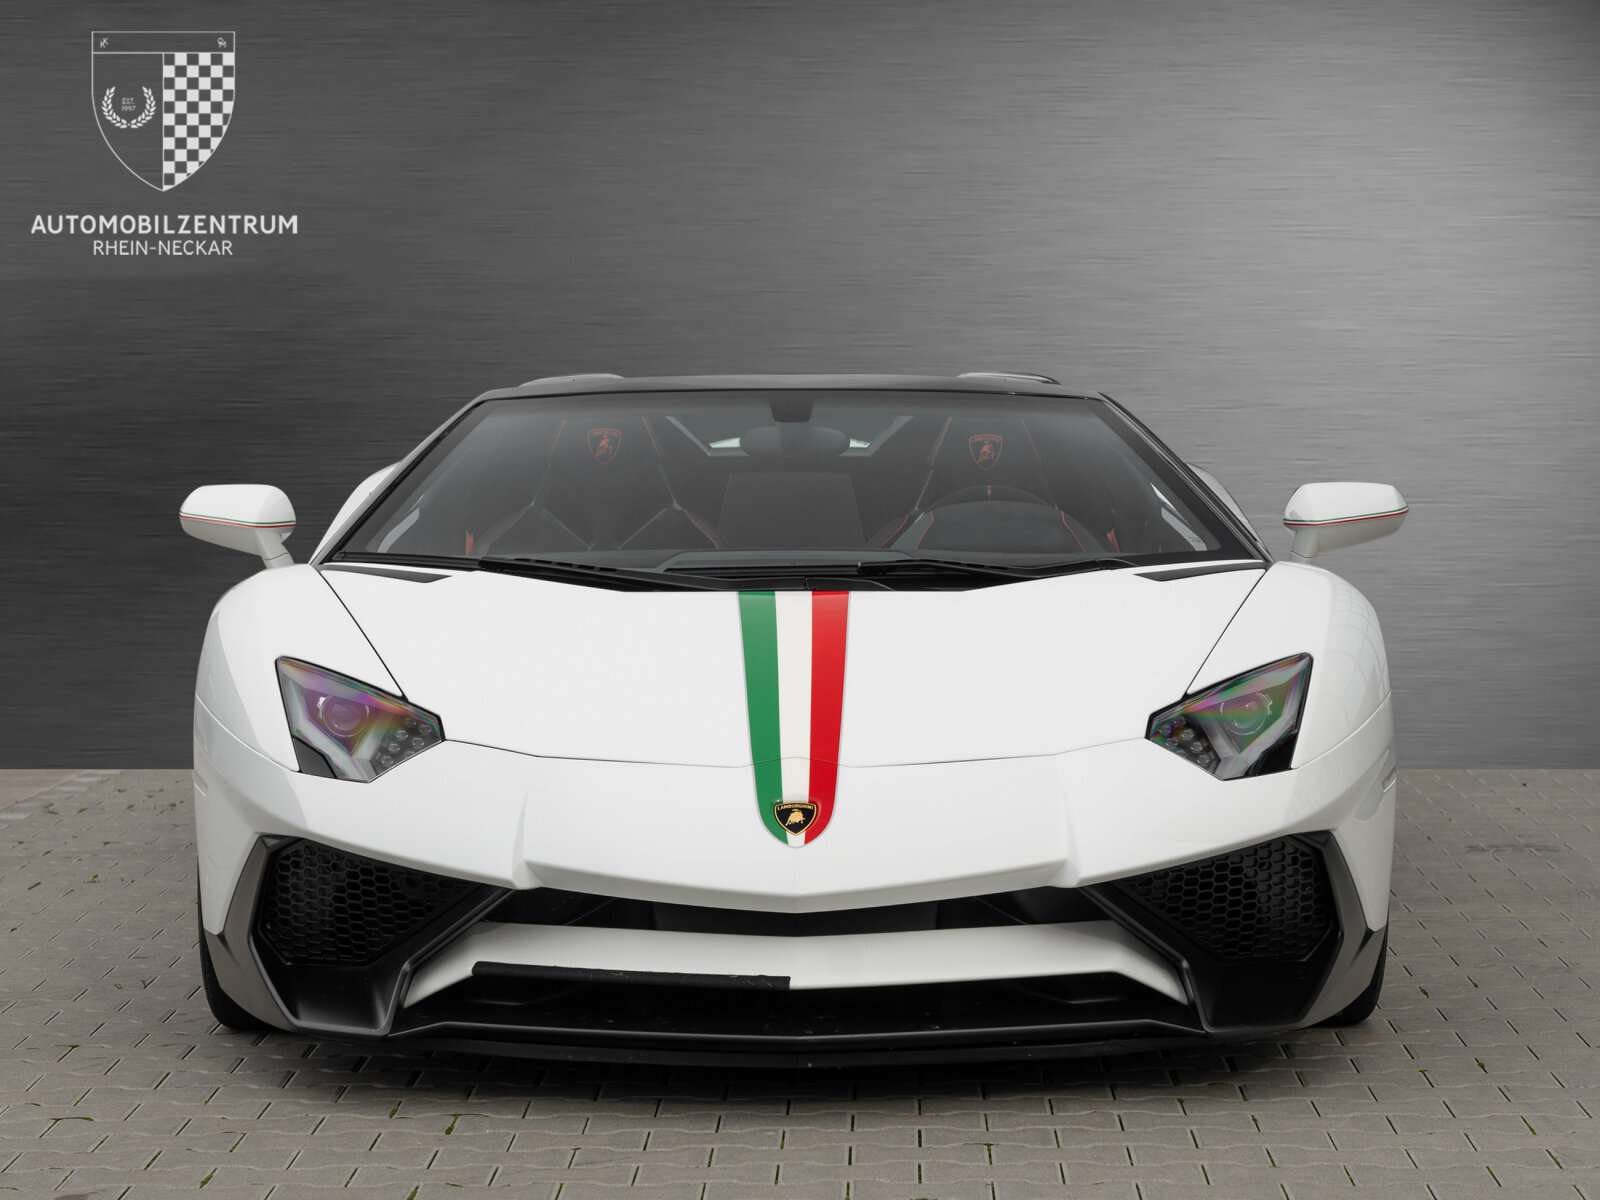 Lamborghini Aventador Convertible in White used in Viernheim for € 479,900.-